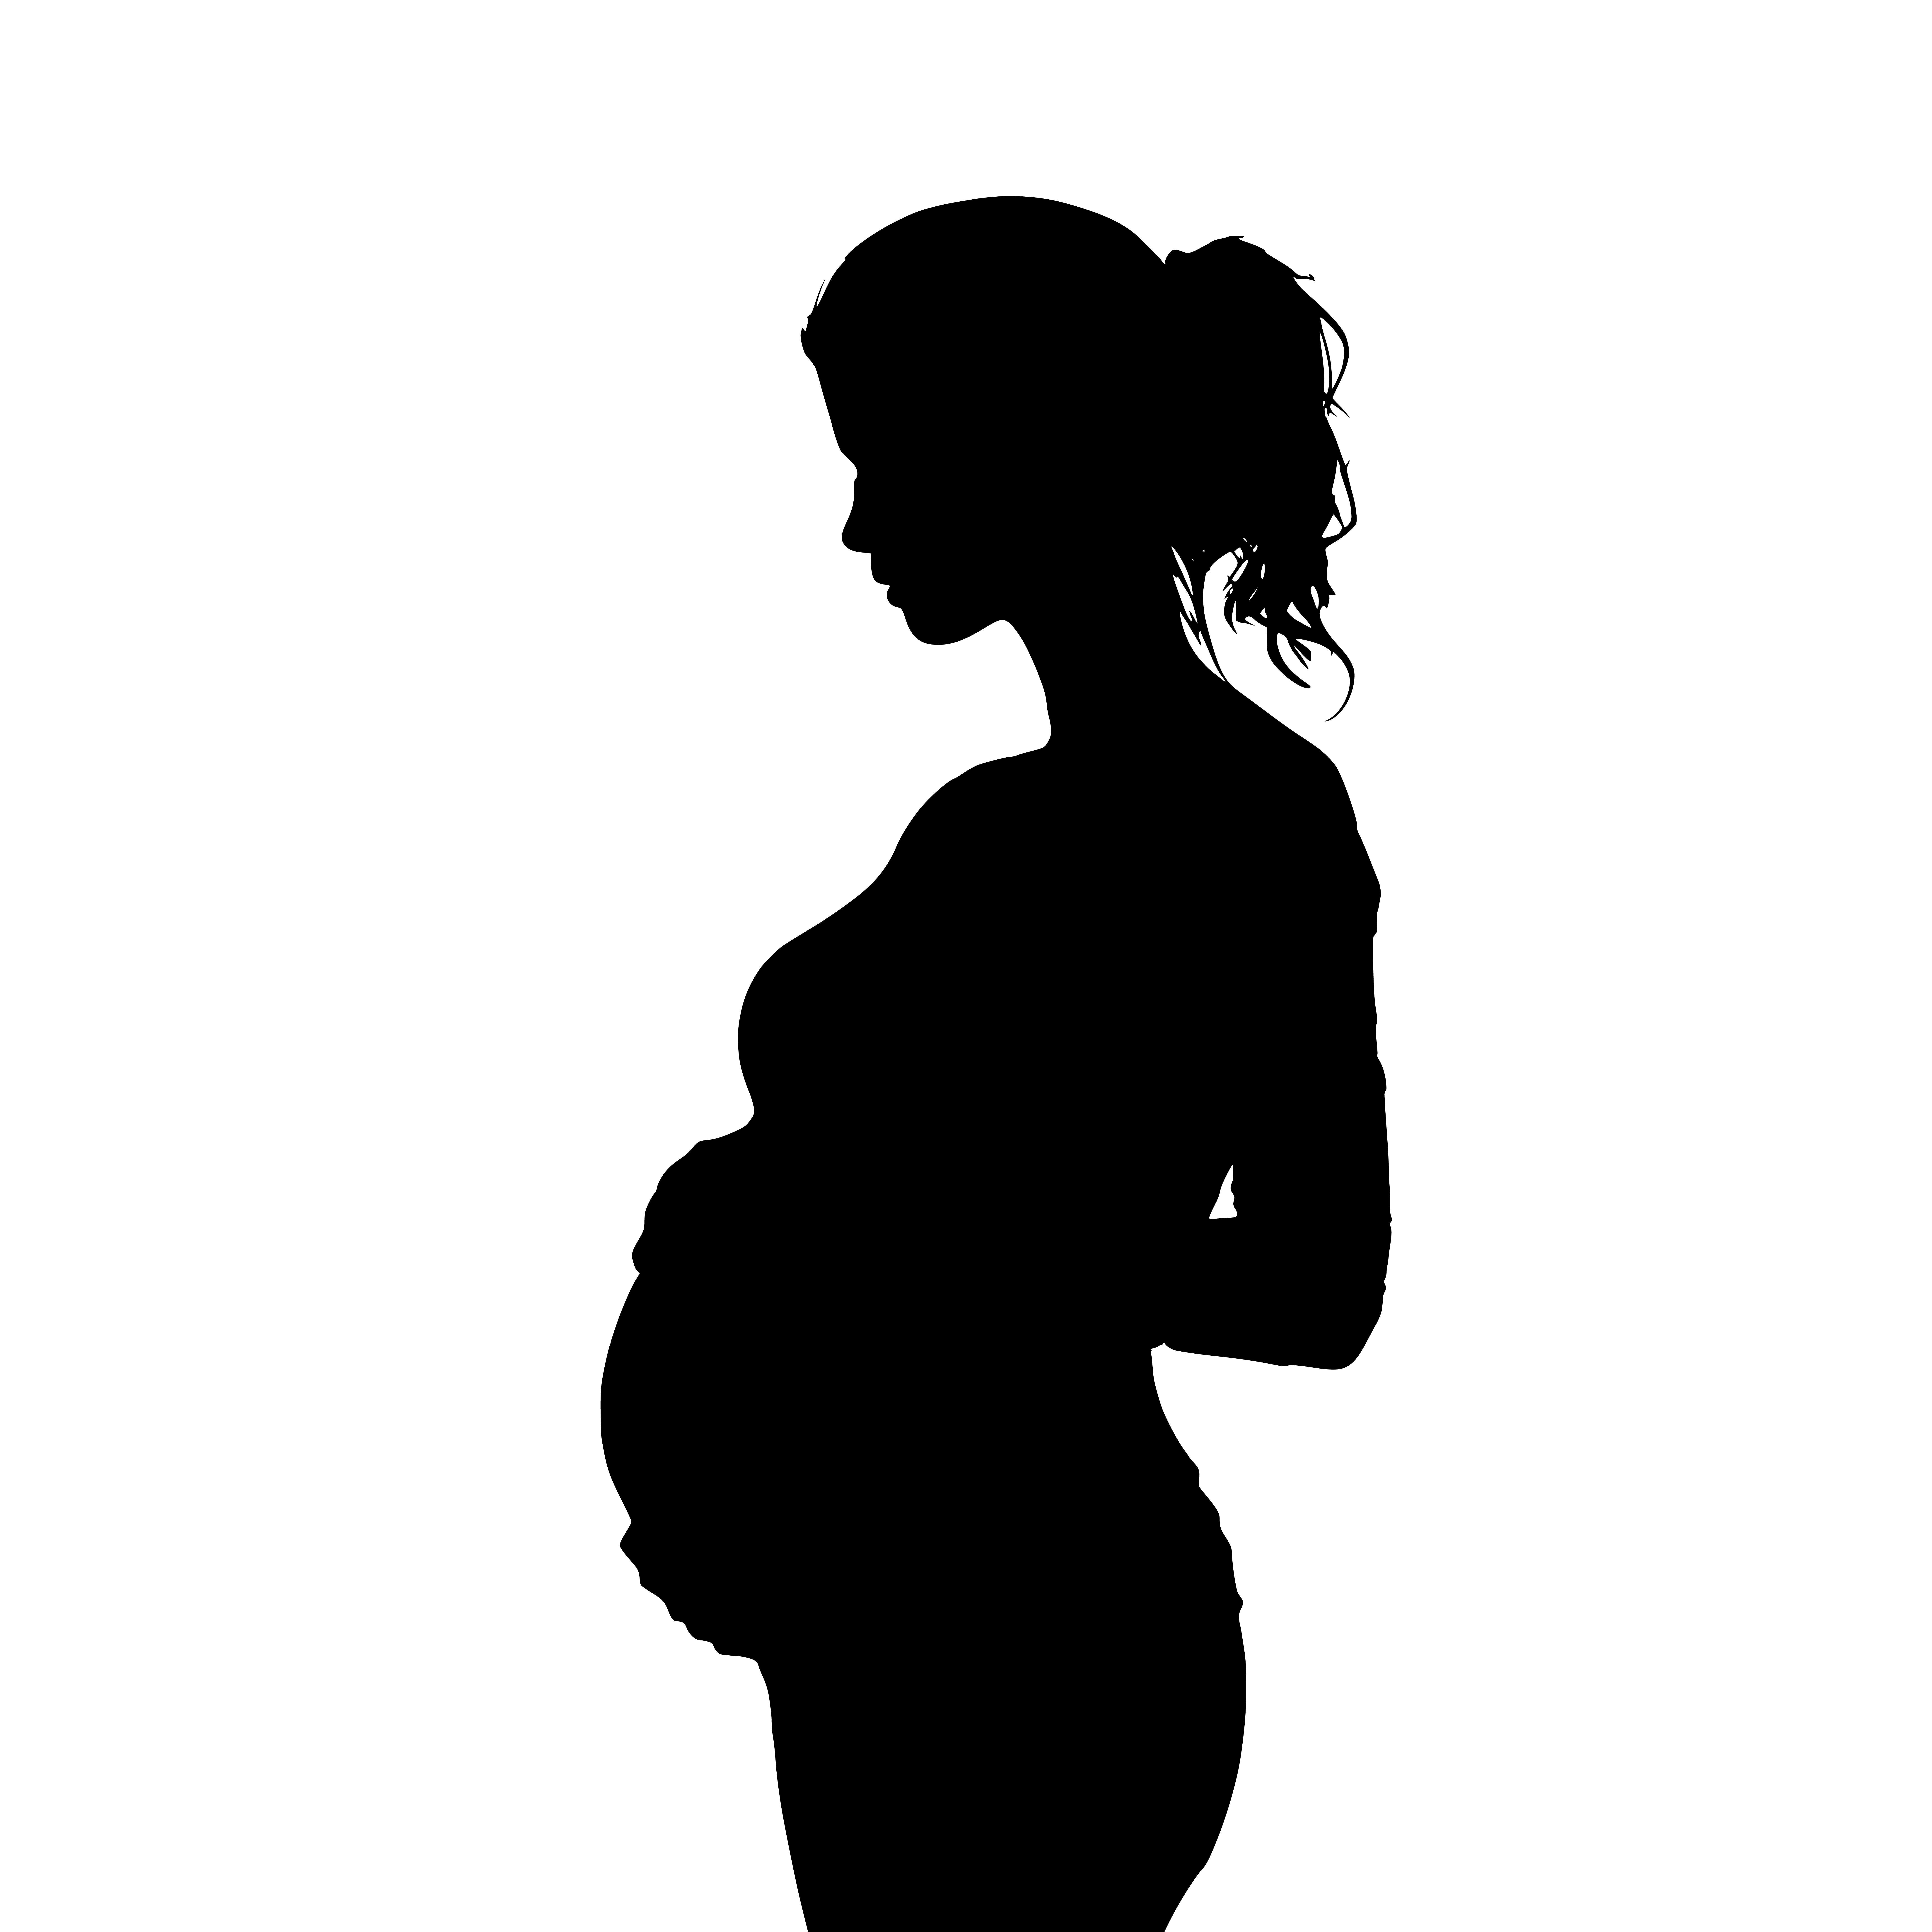 Pregnant woman silhouette design